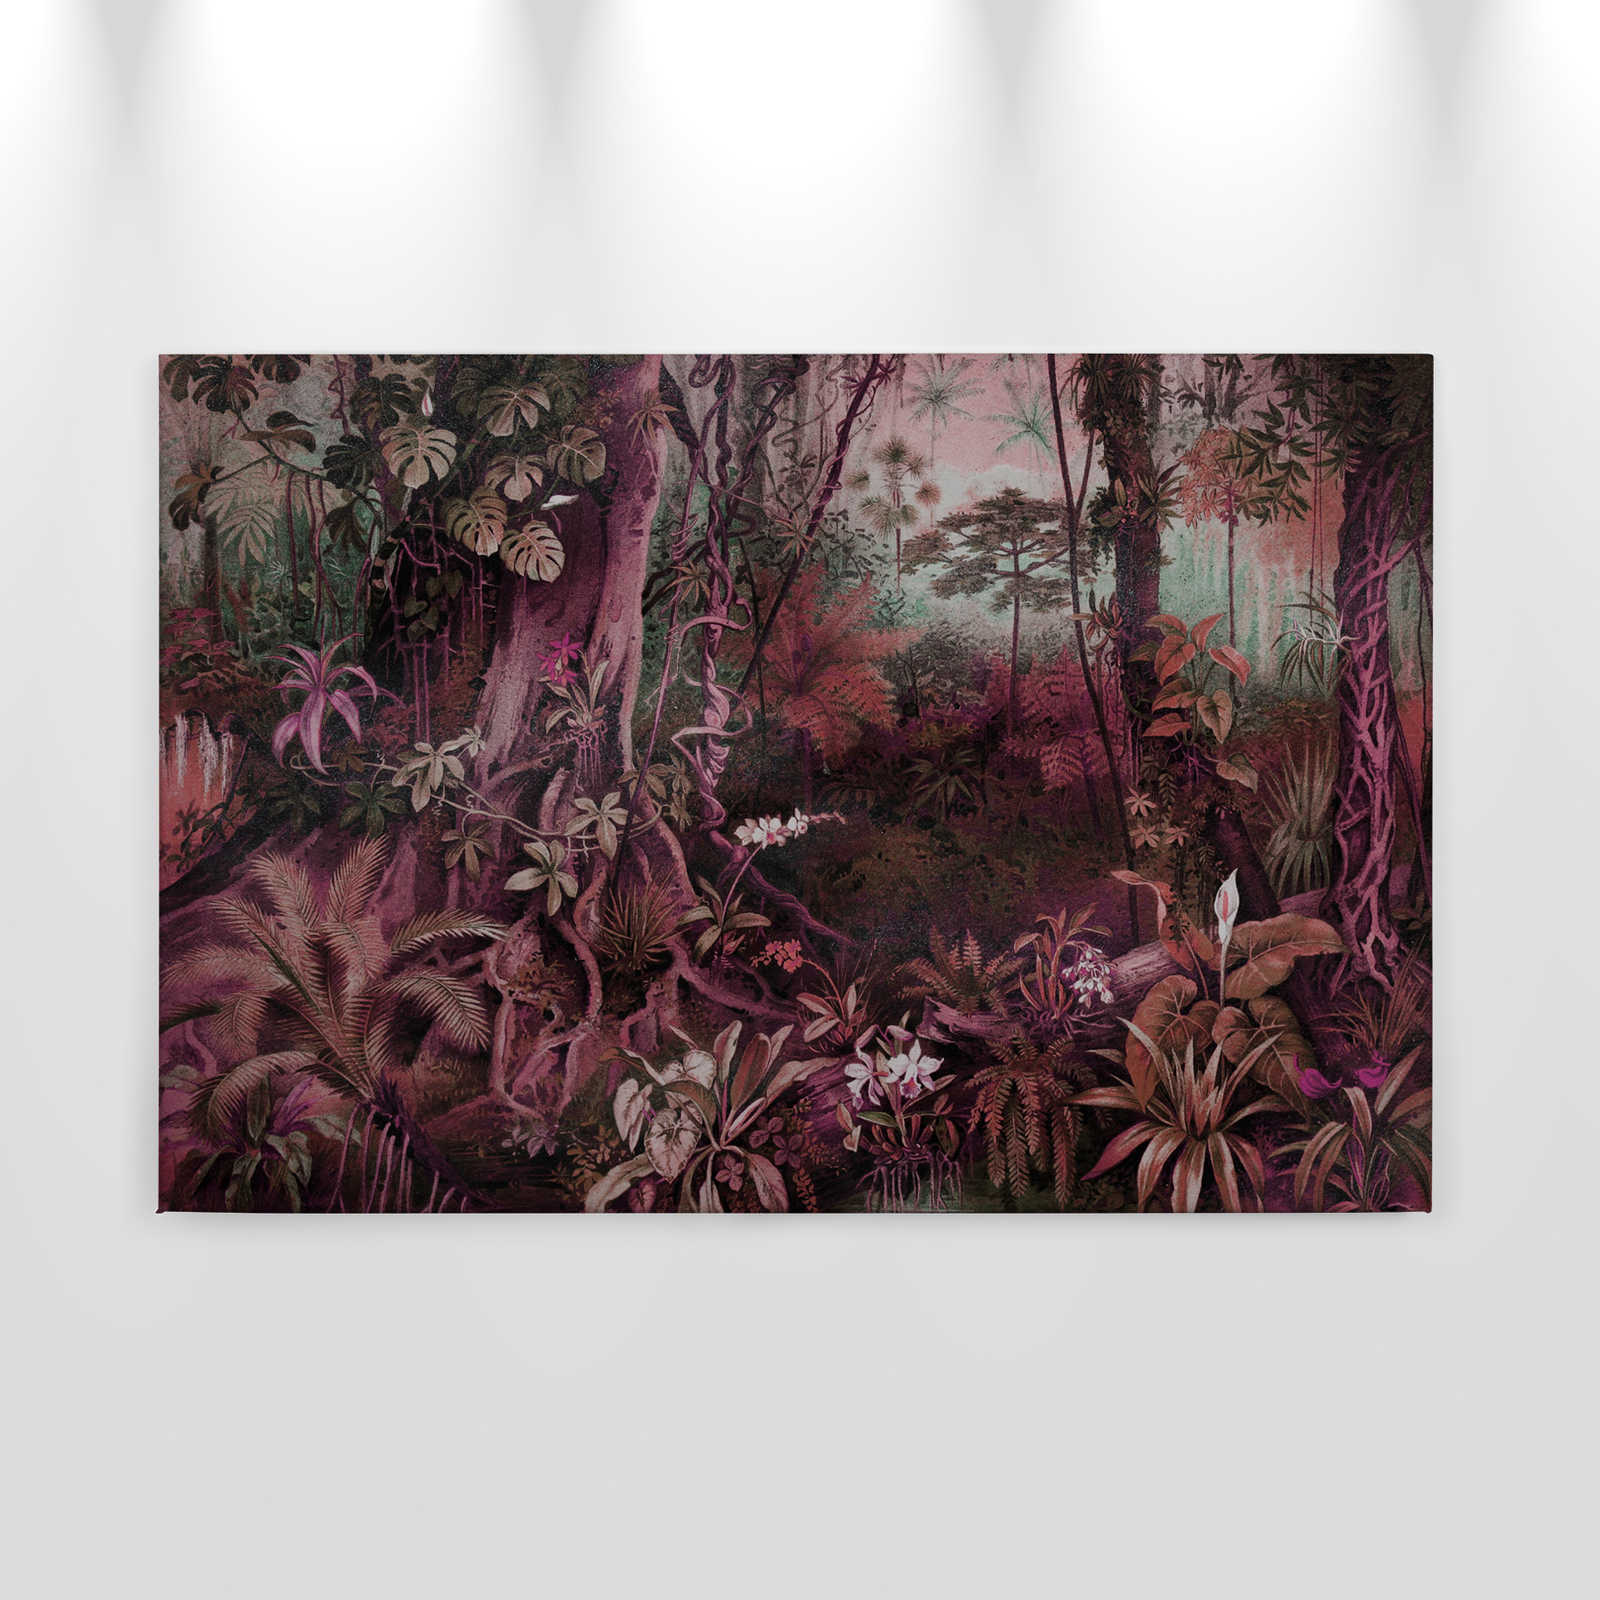             Cuadro lienzo selva en estilo dibujo | morado, verde - 0,90 m x 0,60 m
        